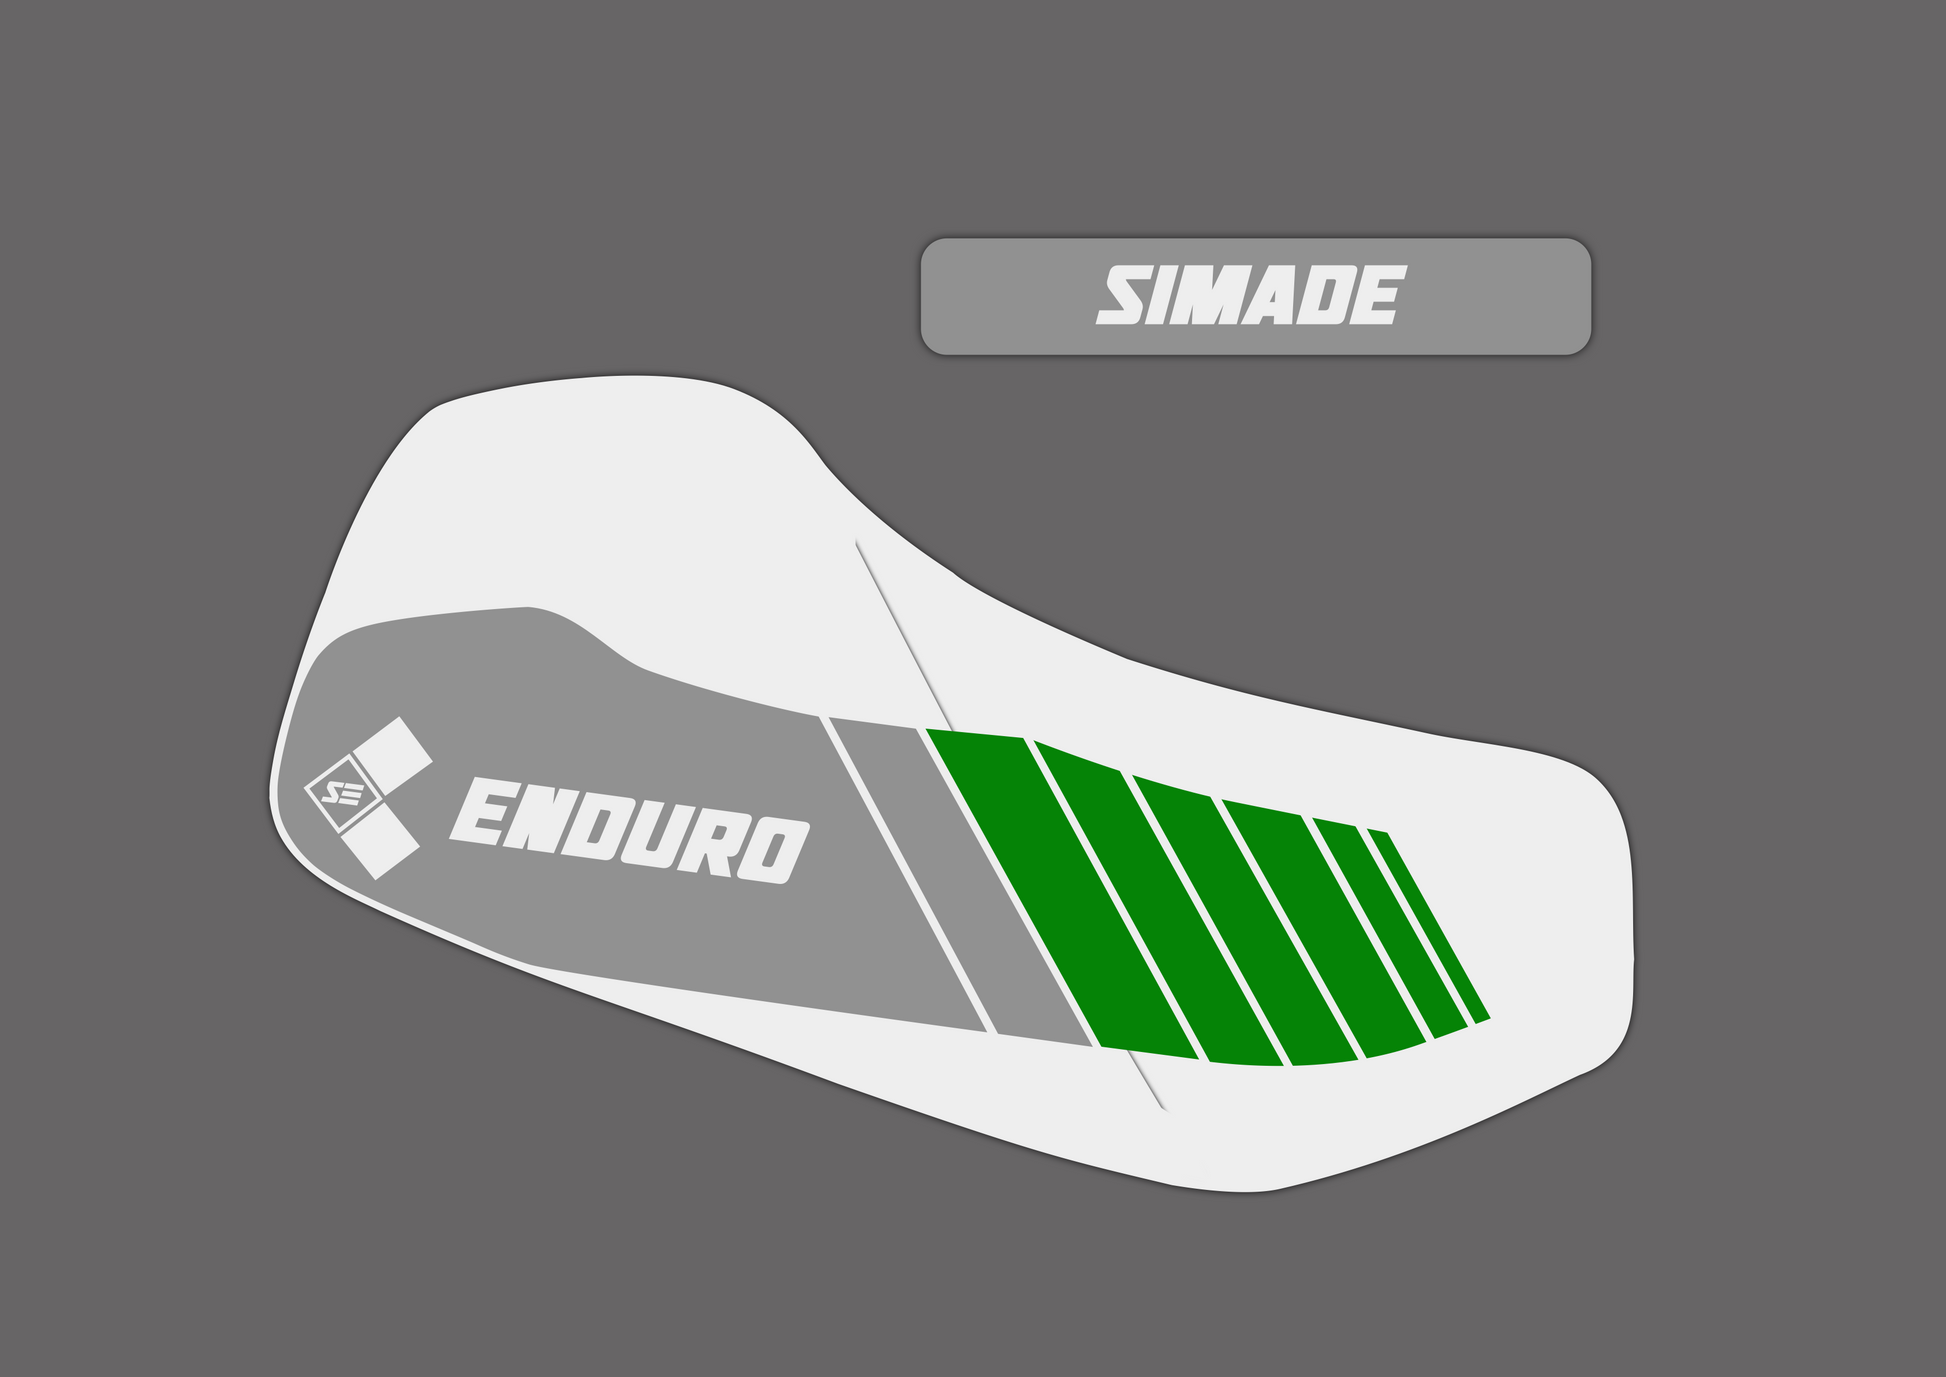 Simson S85 Enduro Aufkleber Set